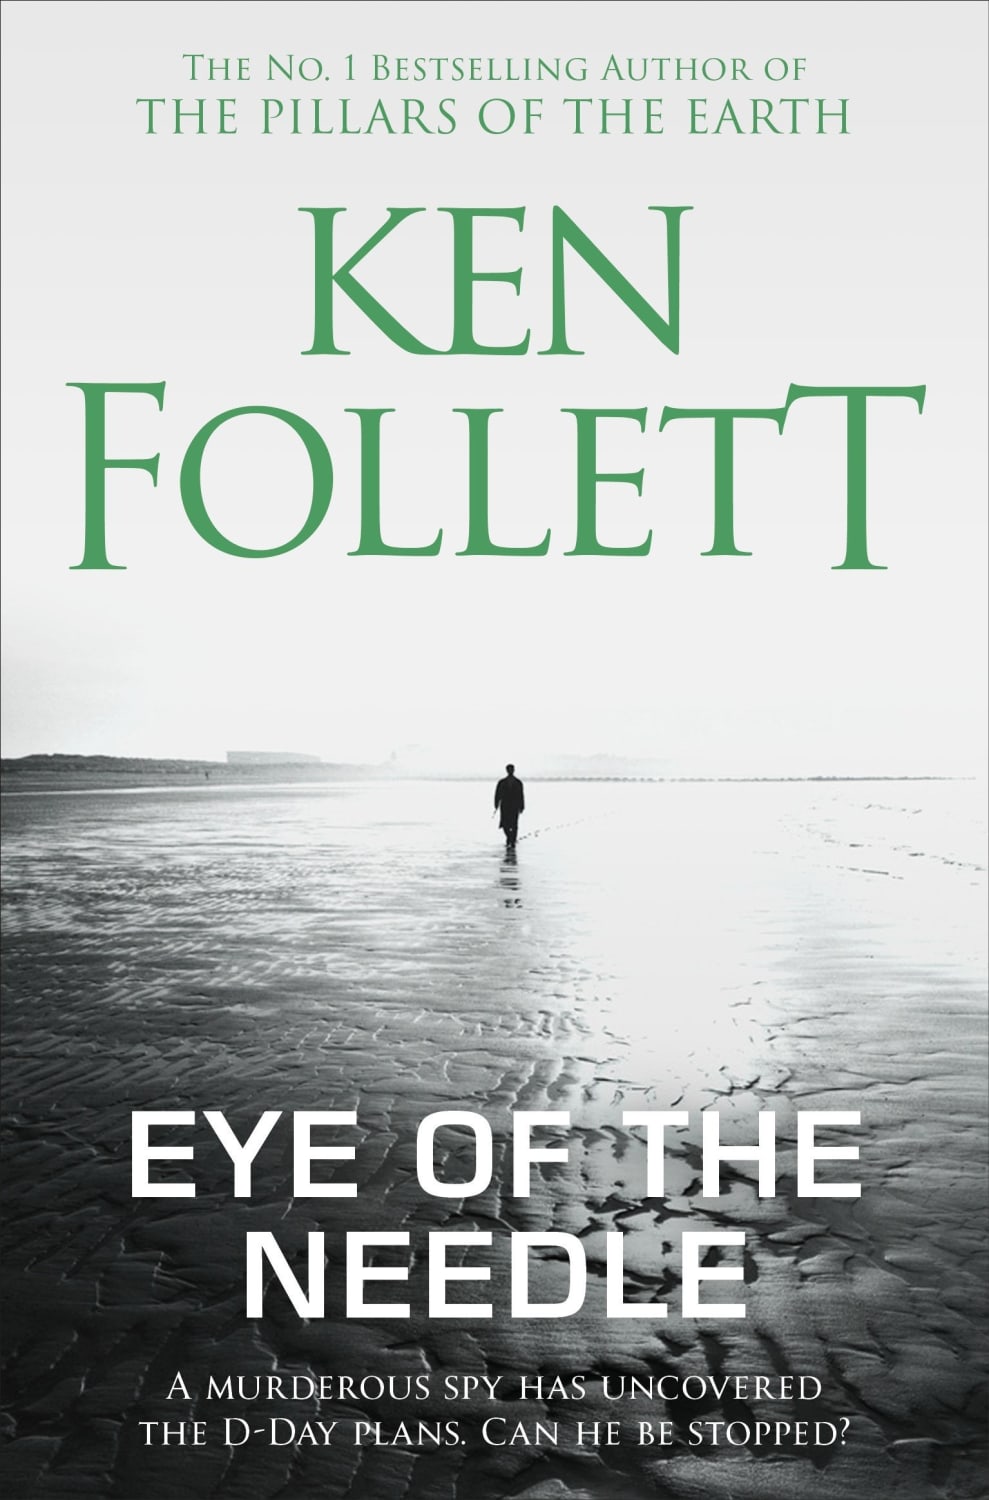 eye of needle ken follett